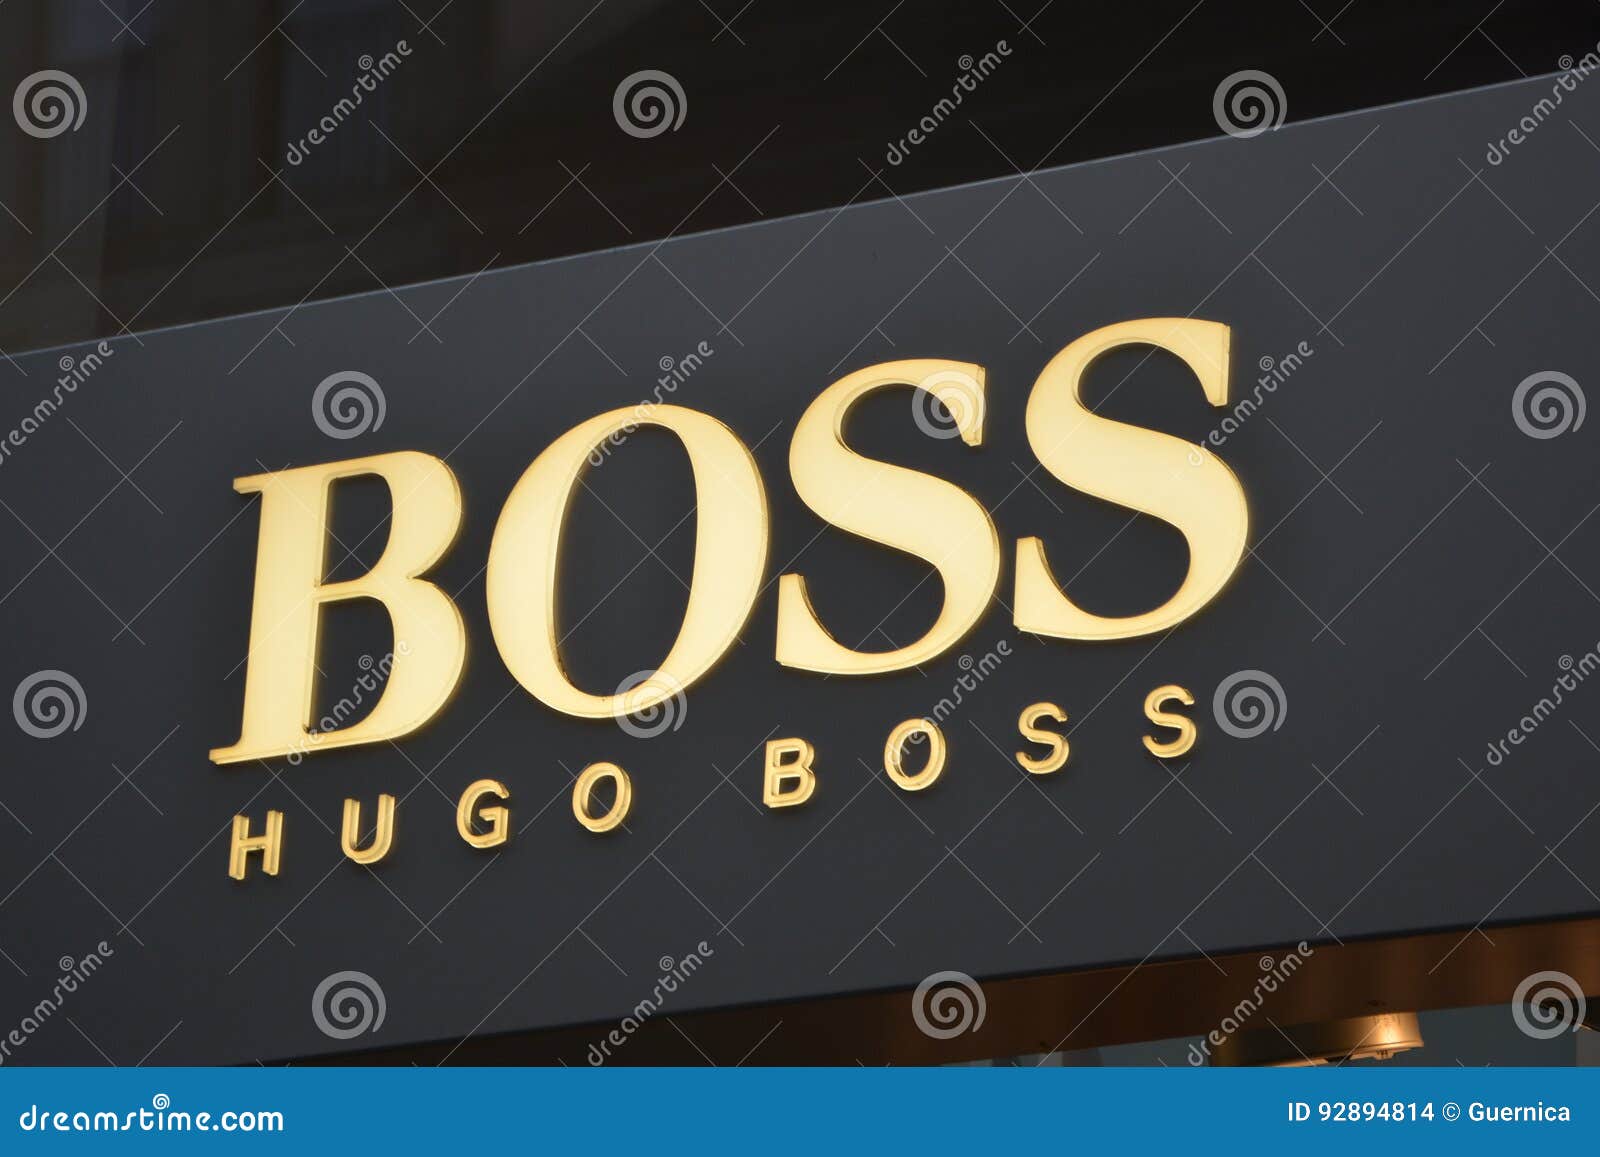 hugo boss logo